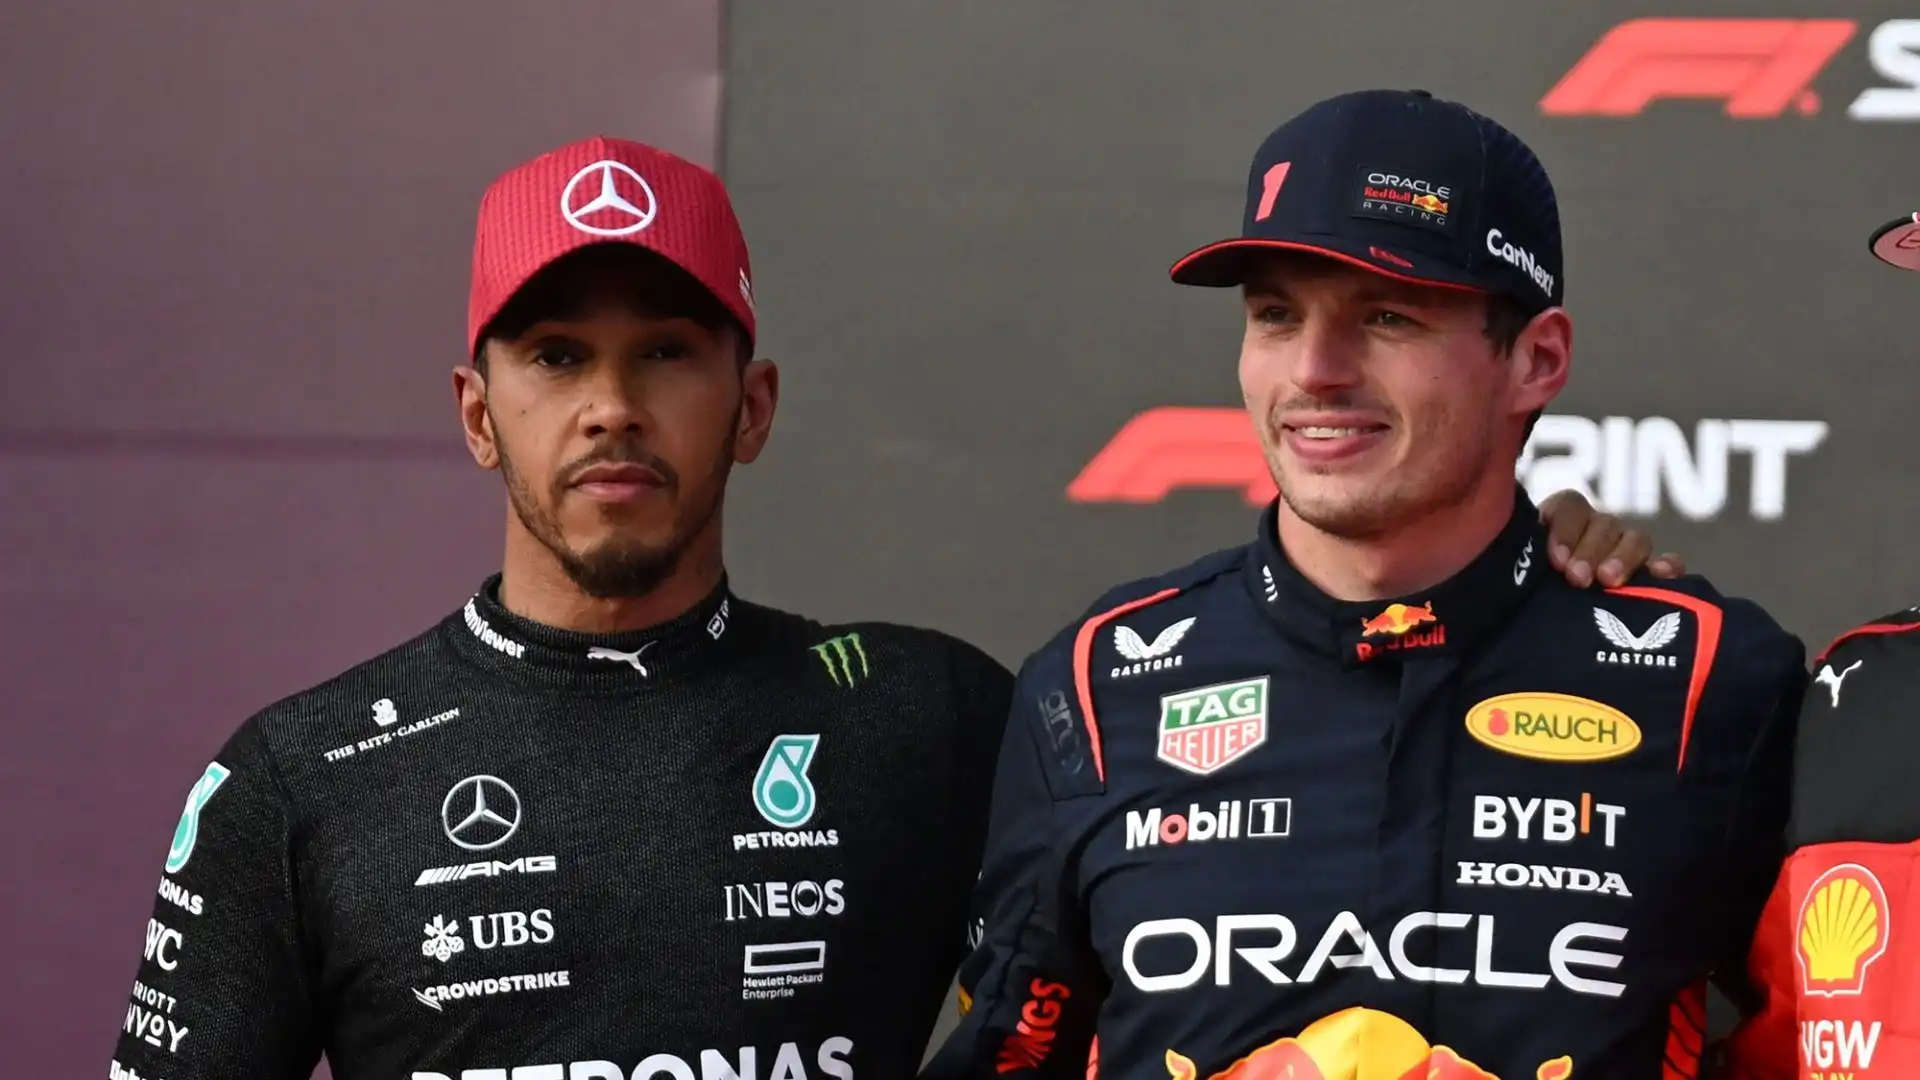 Hamilton vuole tornare a vincere e crede che gli ultimi anni siano stati importanti: "Ho imparato molto come pilota grazie alla sconfitta"